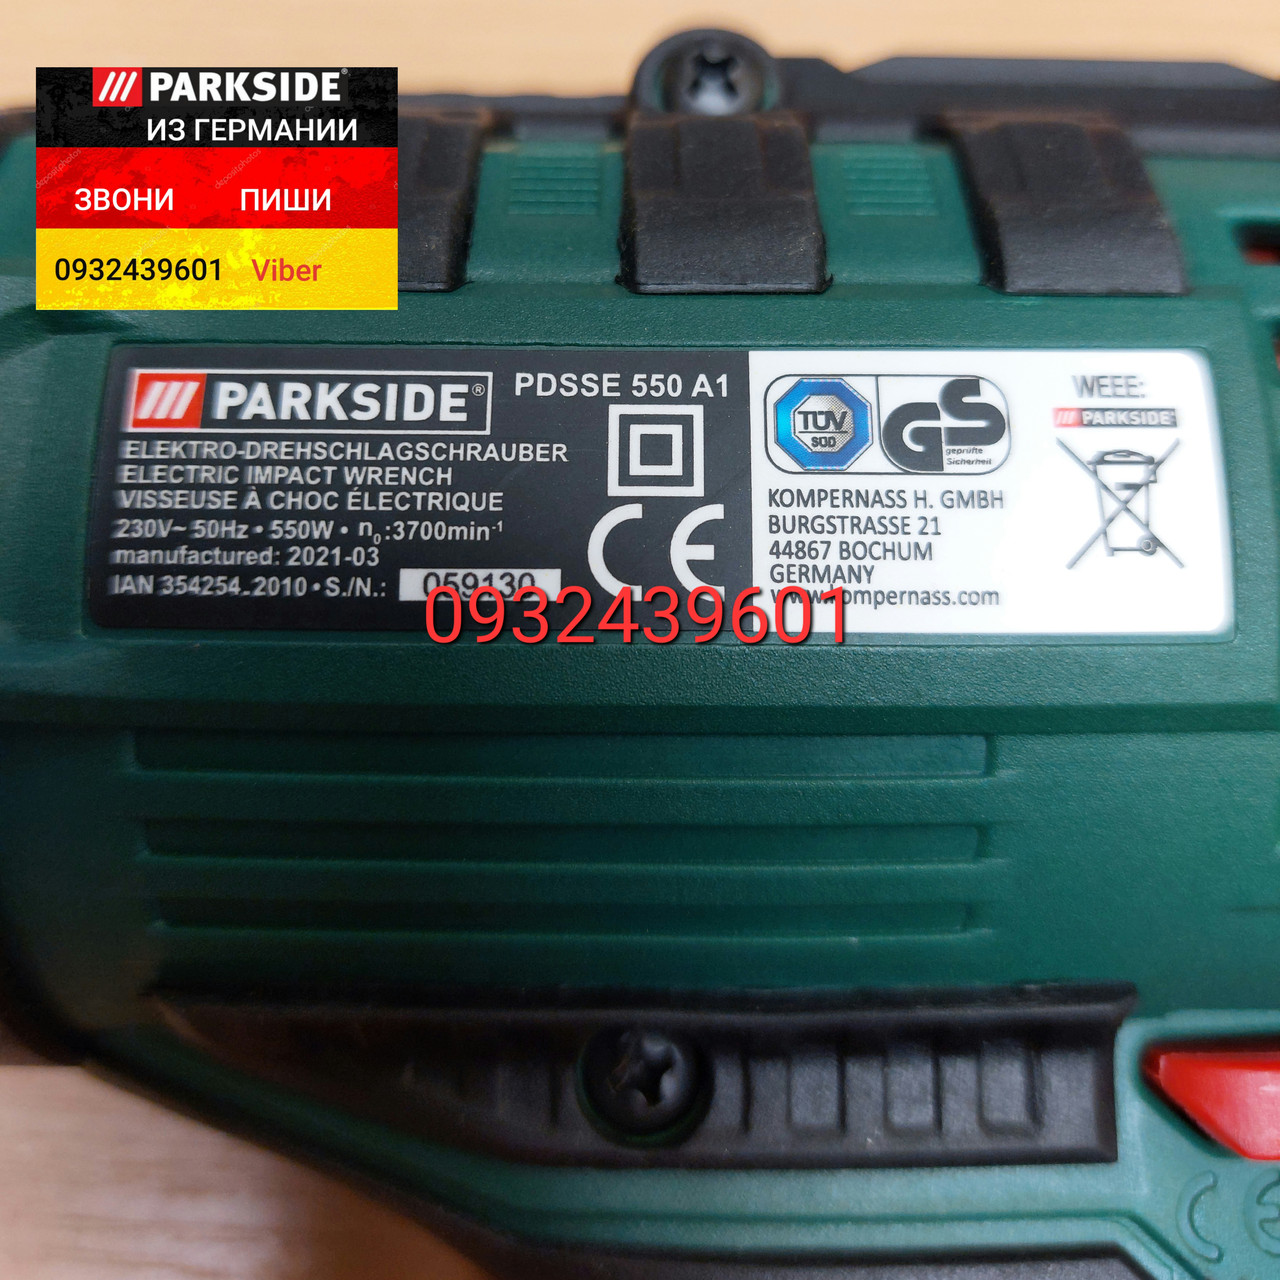 Електричний ударний гайковерт з НІМЕЧЧИНИ Parkside PDSSE 550 A1  (ID#1531092164), цена: 2999 ₴, купить на